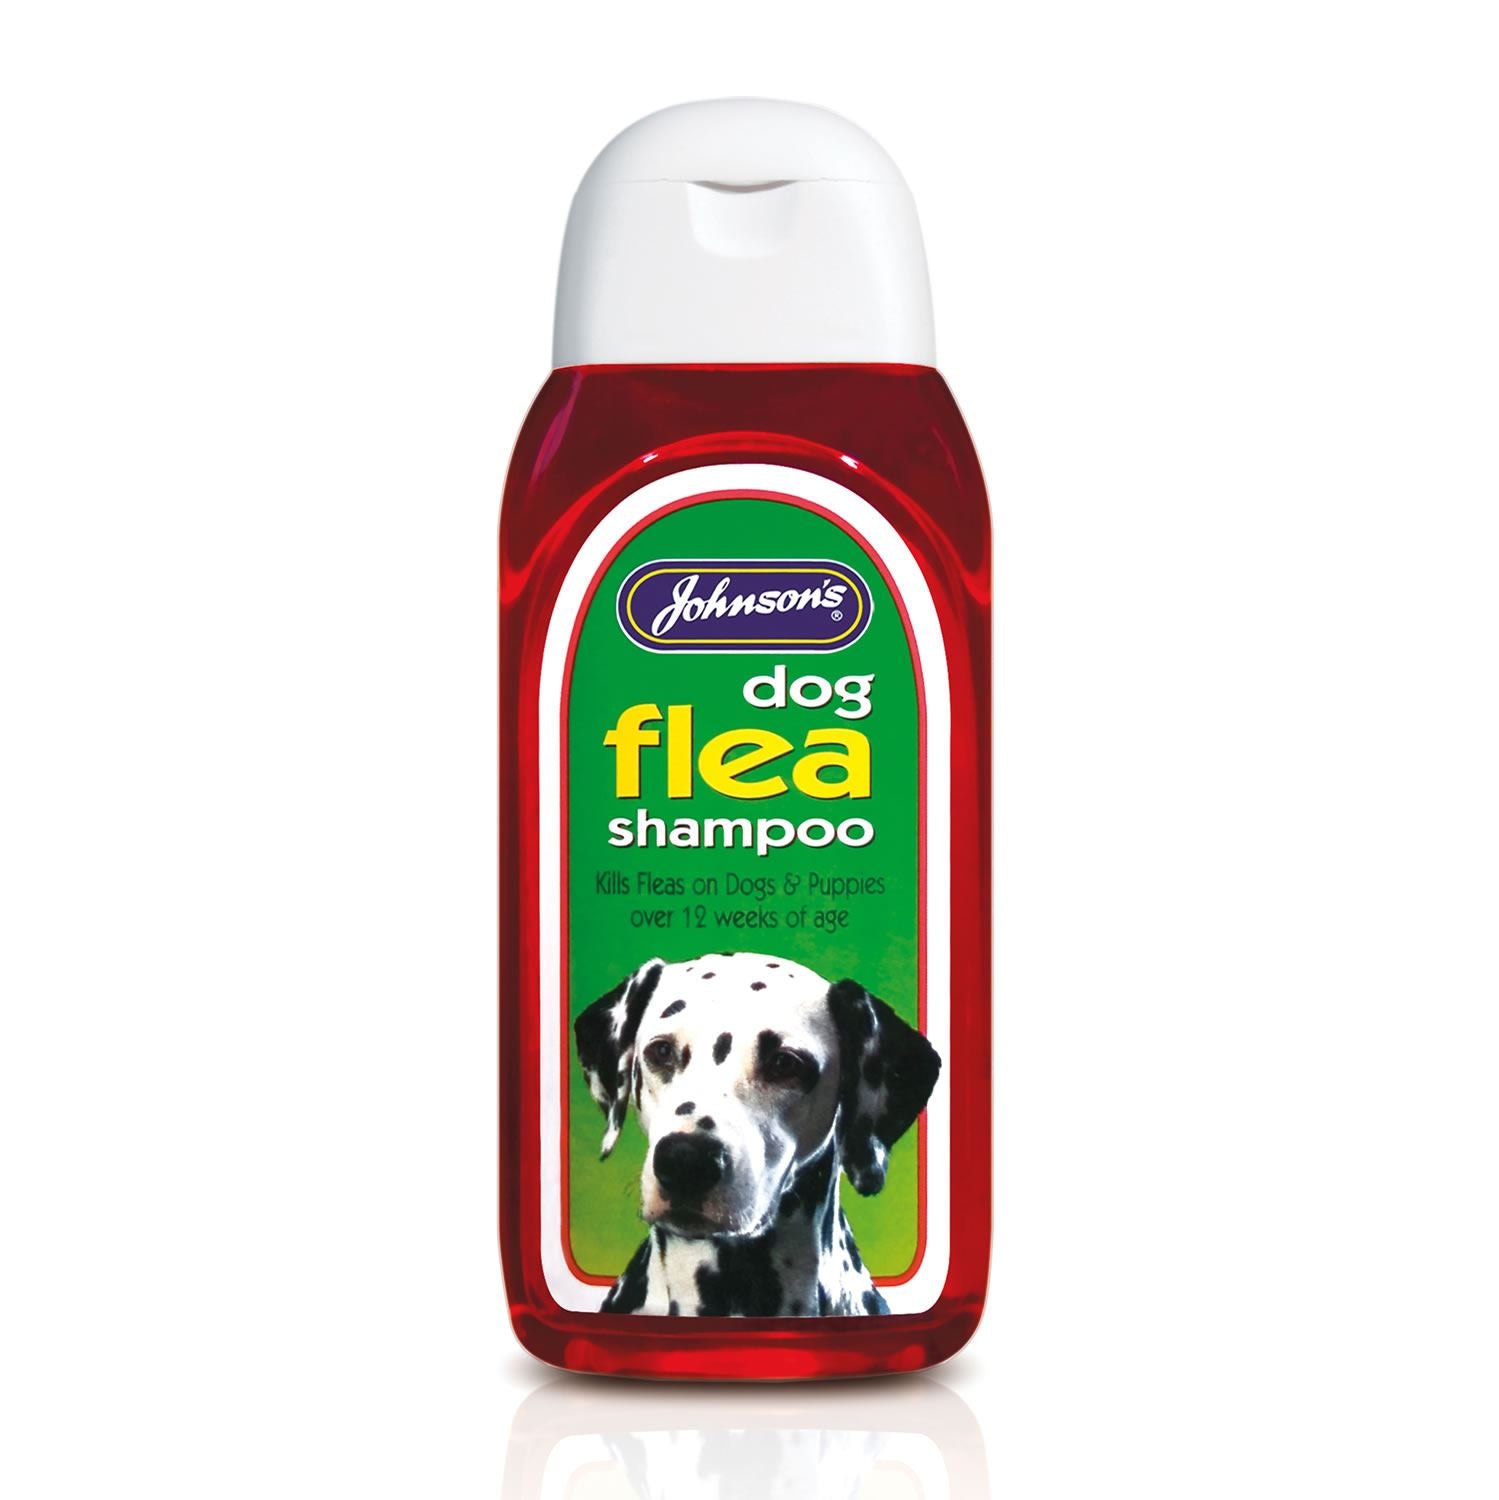 JohnsonS Veterinary Dog Flea Shampoo - Just Horse Riders